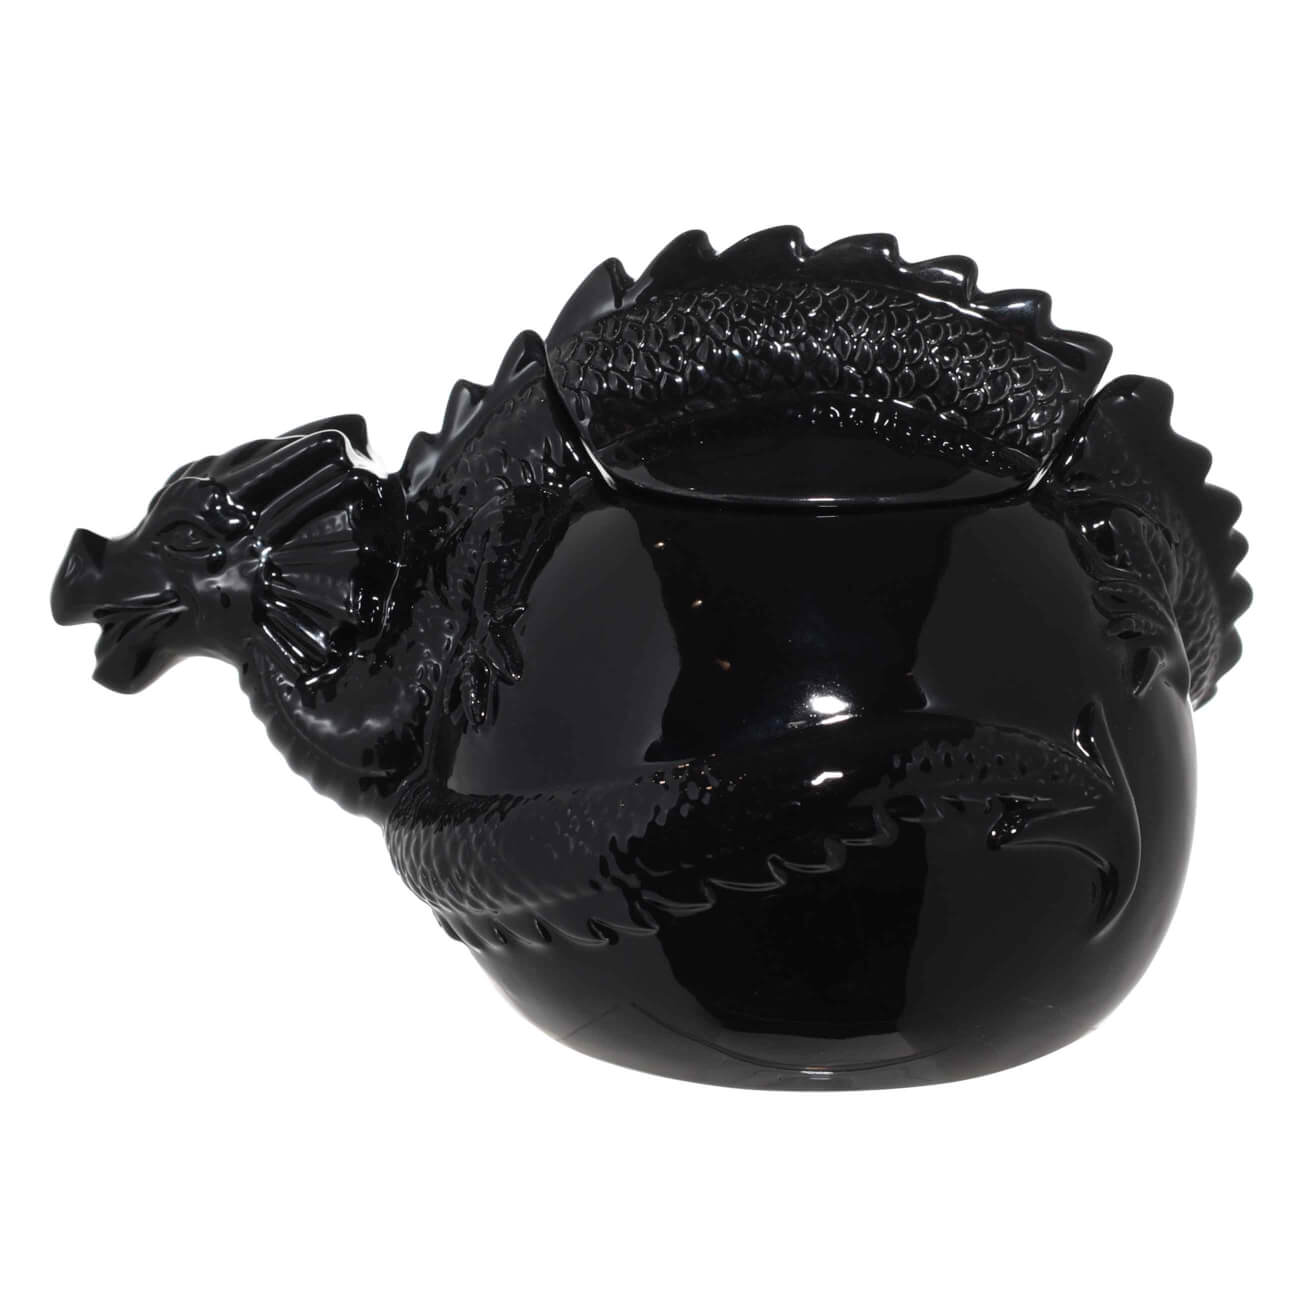 Емкость для хранения, 22х14 см, керамика, черная, Дракон, Dragon dayron сувенир дракон таня гжель ной